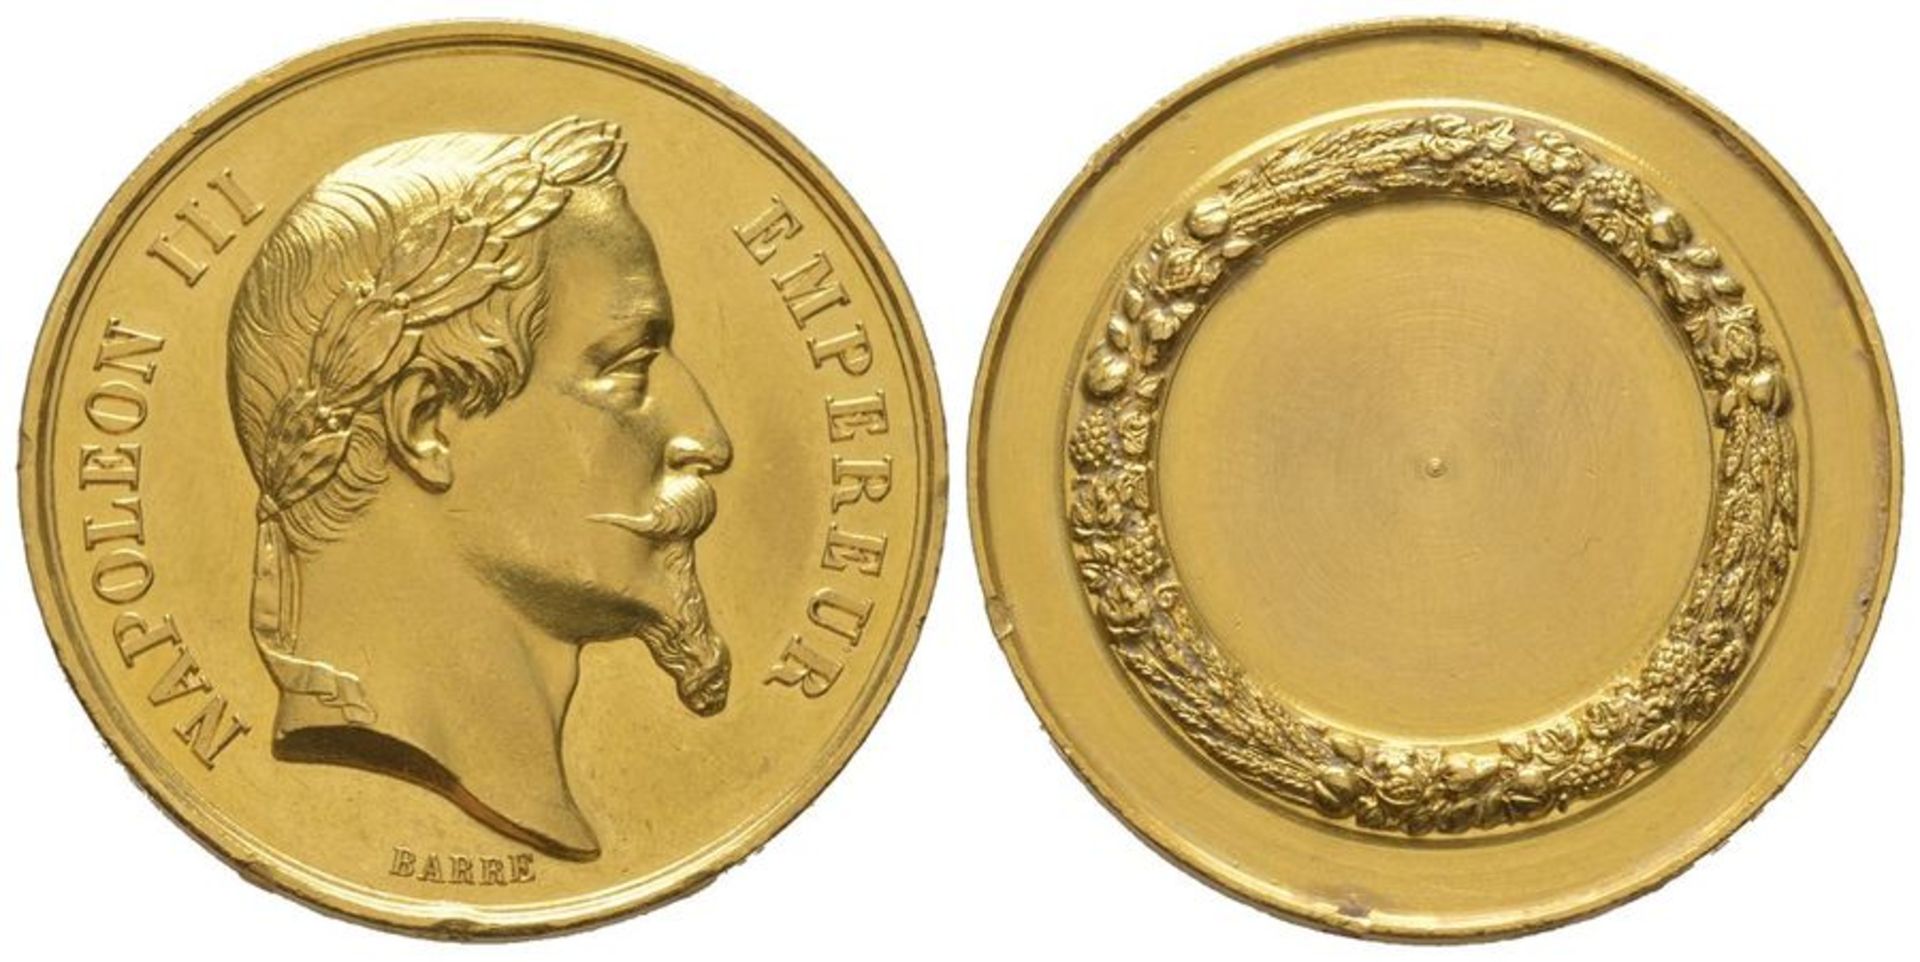 France, Napoléon III 1852-1870. Gold medal, AU 23.62 g. 33 mm, by Barre AU -